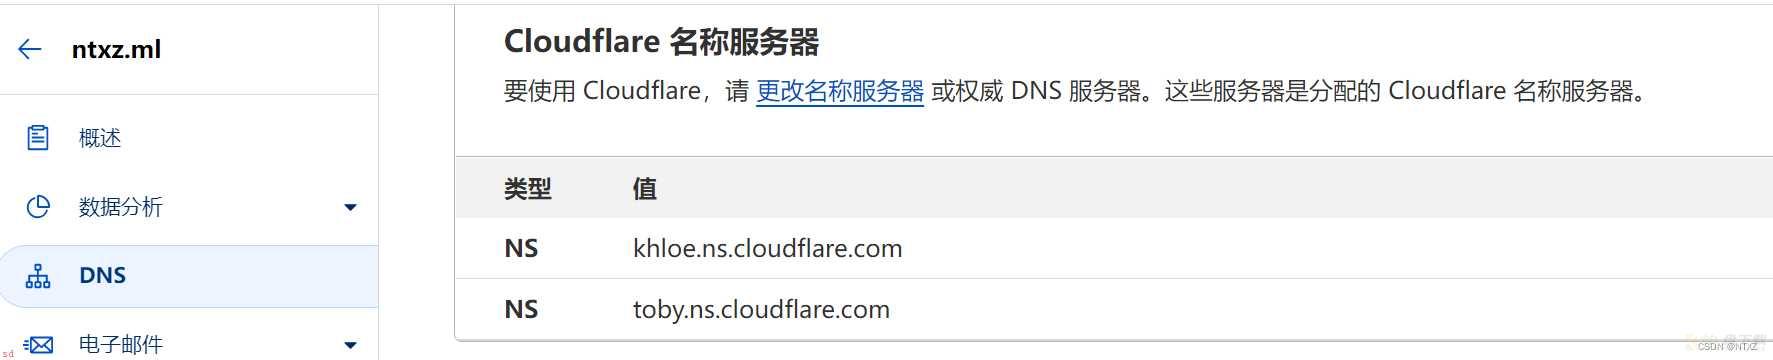 利用cloudflare让未备份域名转发至自己服务器地址